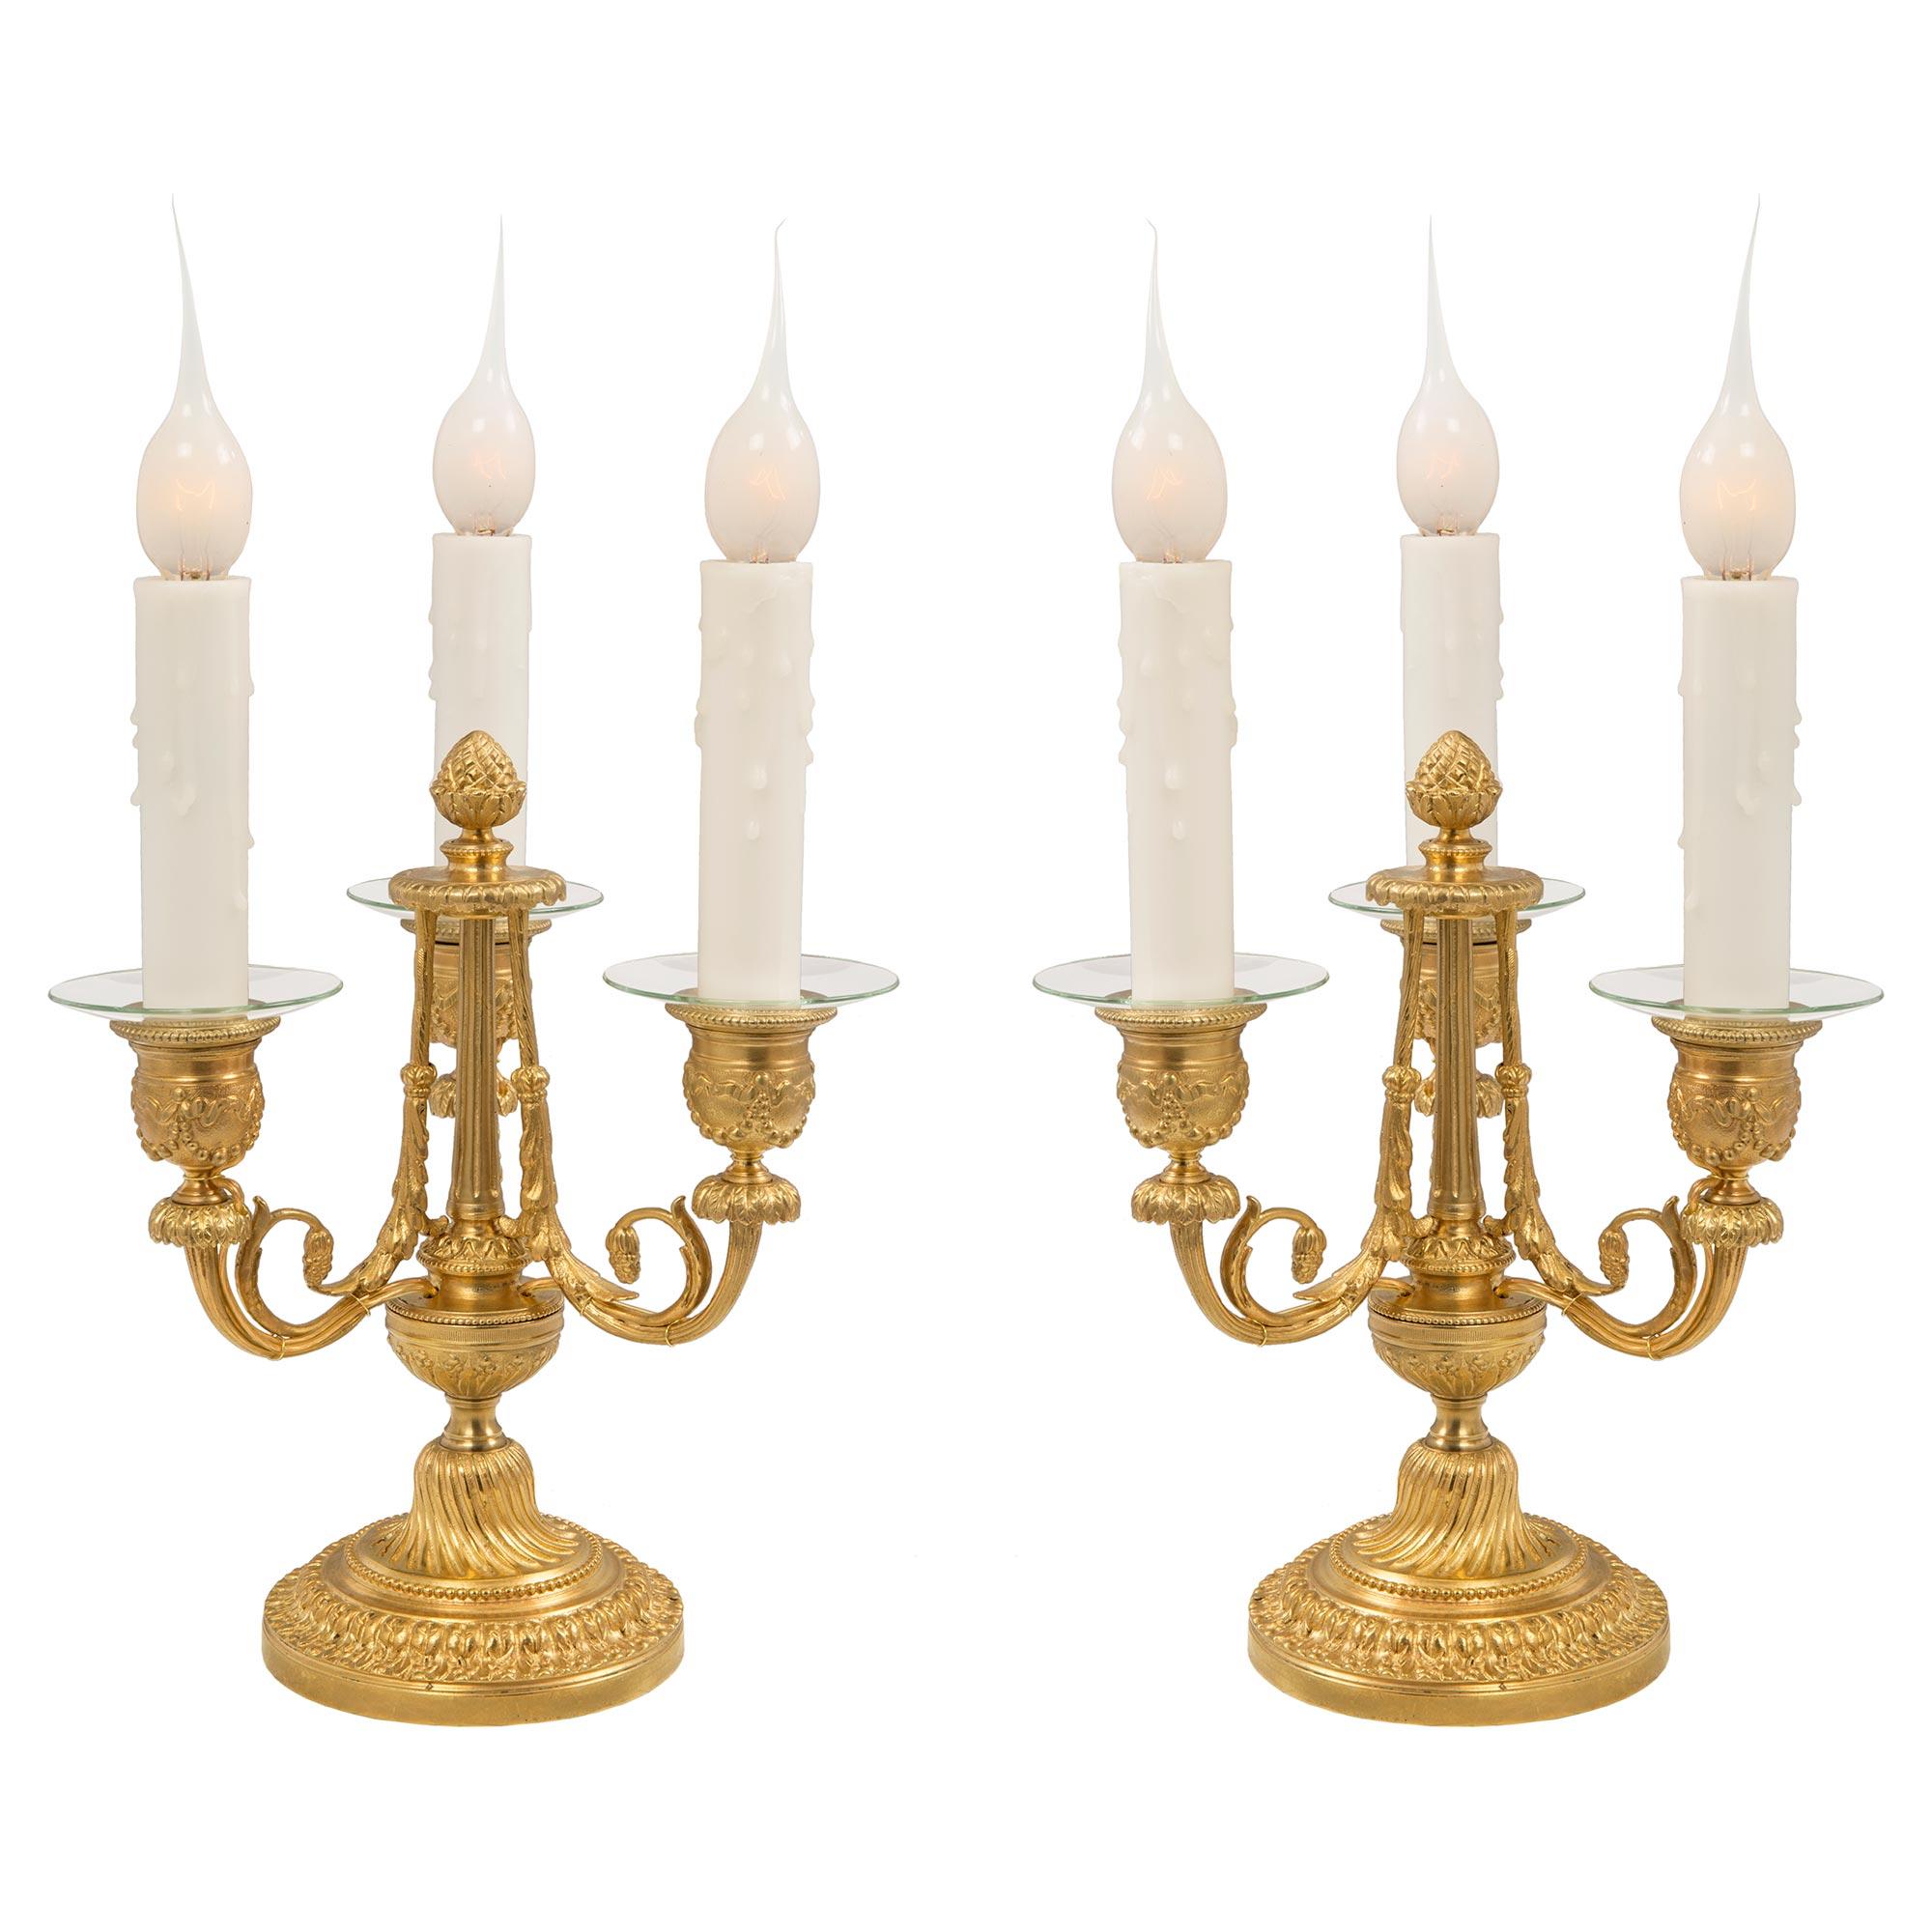 Une élégante paire de lampes candélabres à trois bras en bronze doré de style Louis XVI du 19ème siècle. Chaque lampe est surélevée par une base circulaire à gradins avec une belle bande de feuillage enveloppante et un motif perlé. Au-dessus du